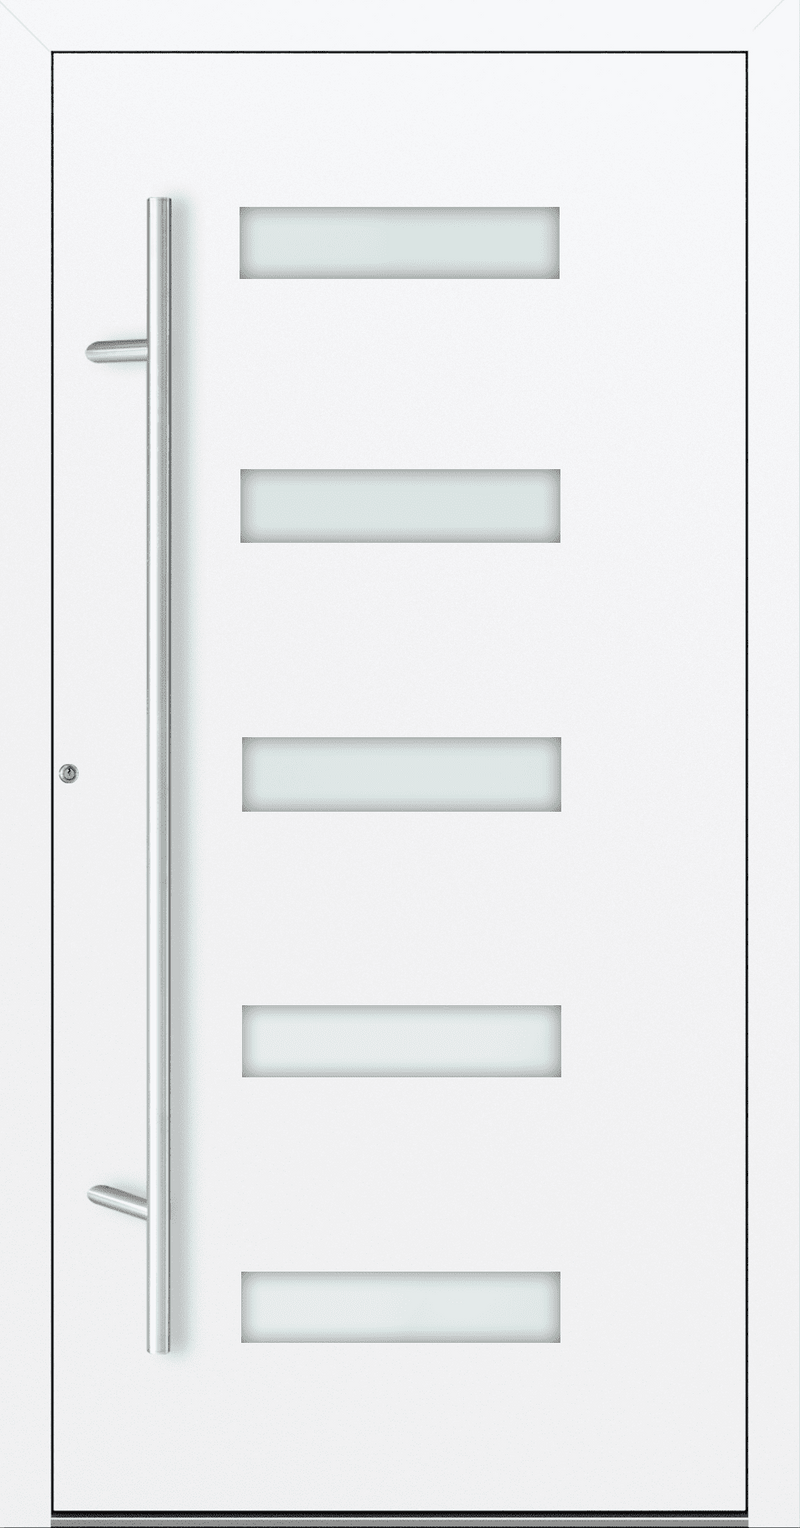 Turenwerke SL75 Design 11 Aluminium Door - White RAL9016